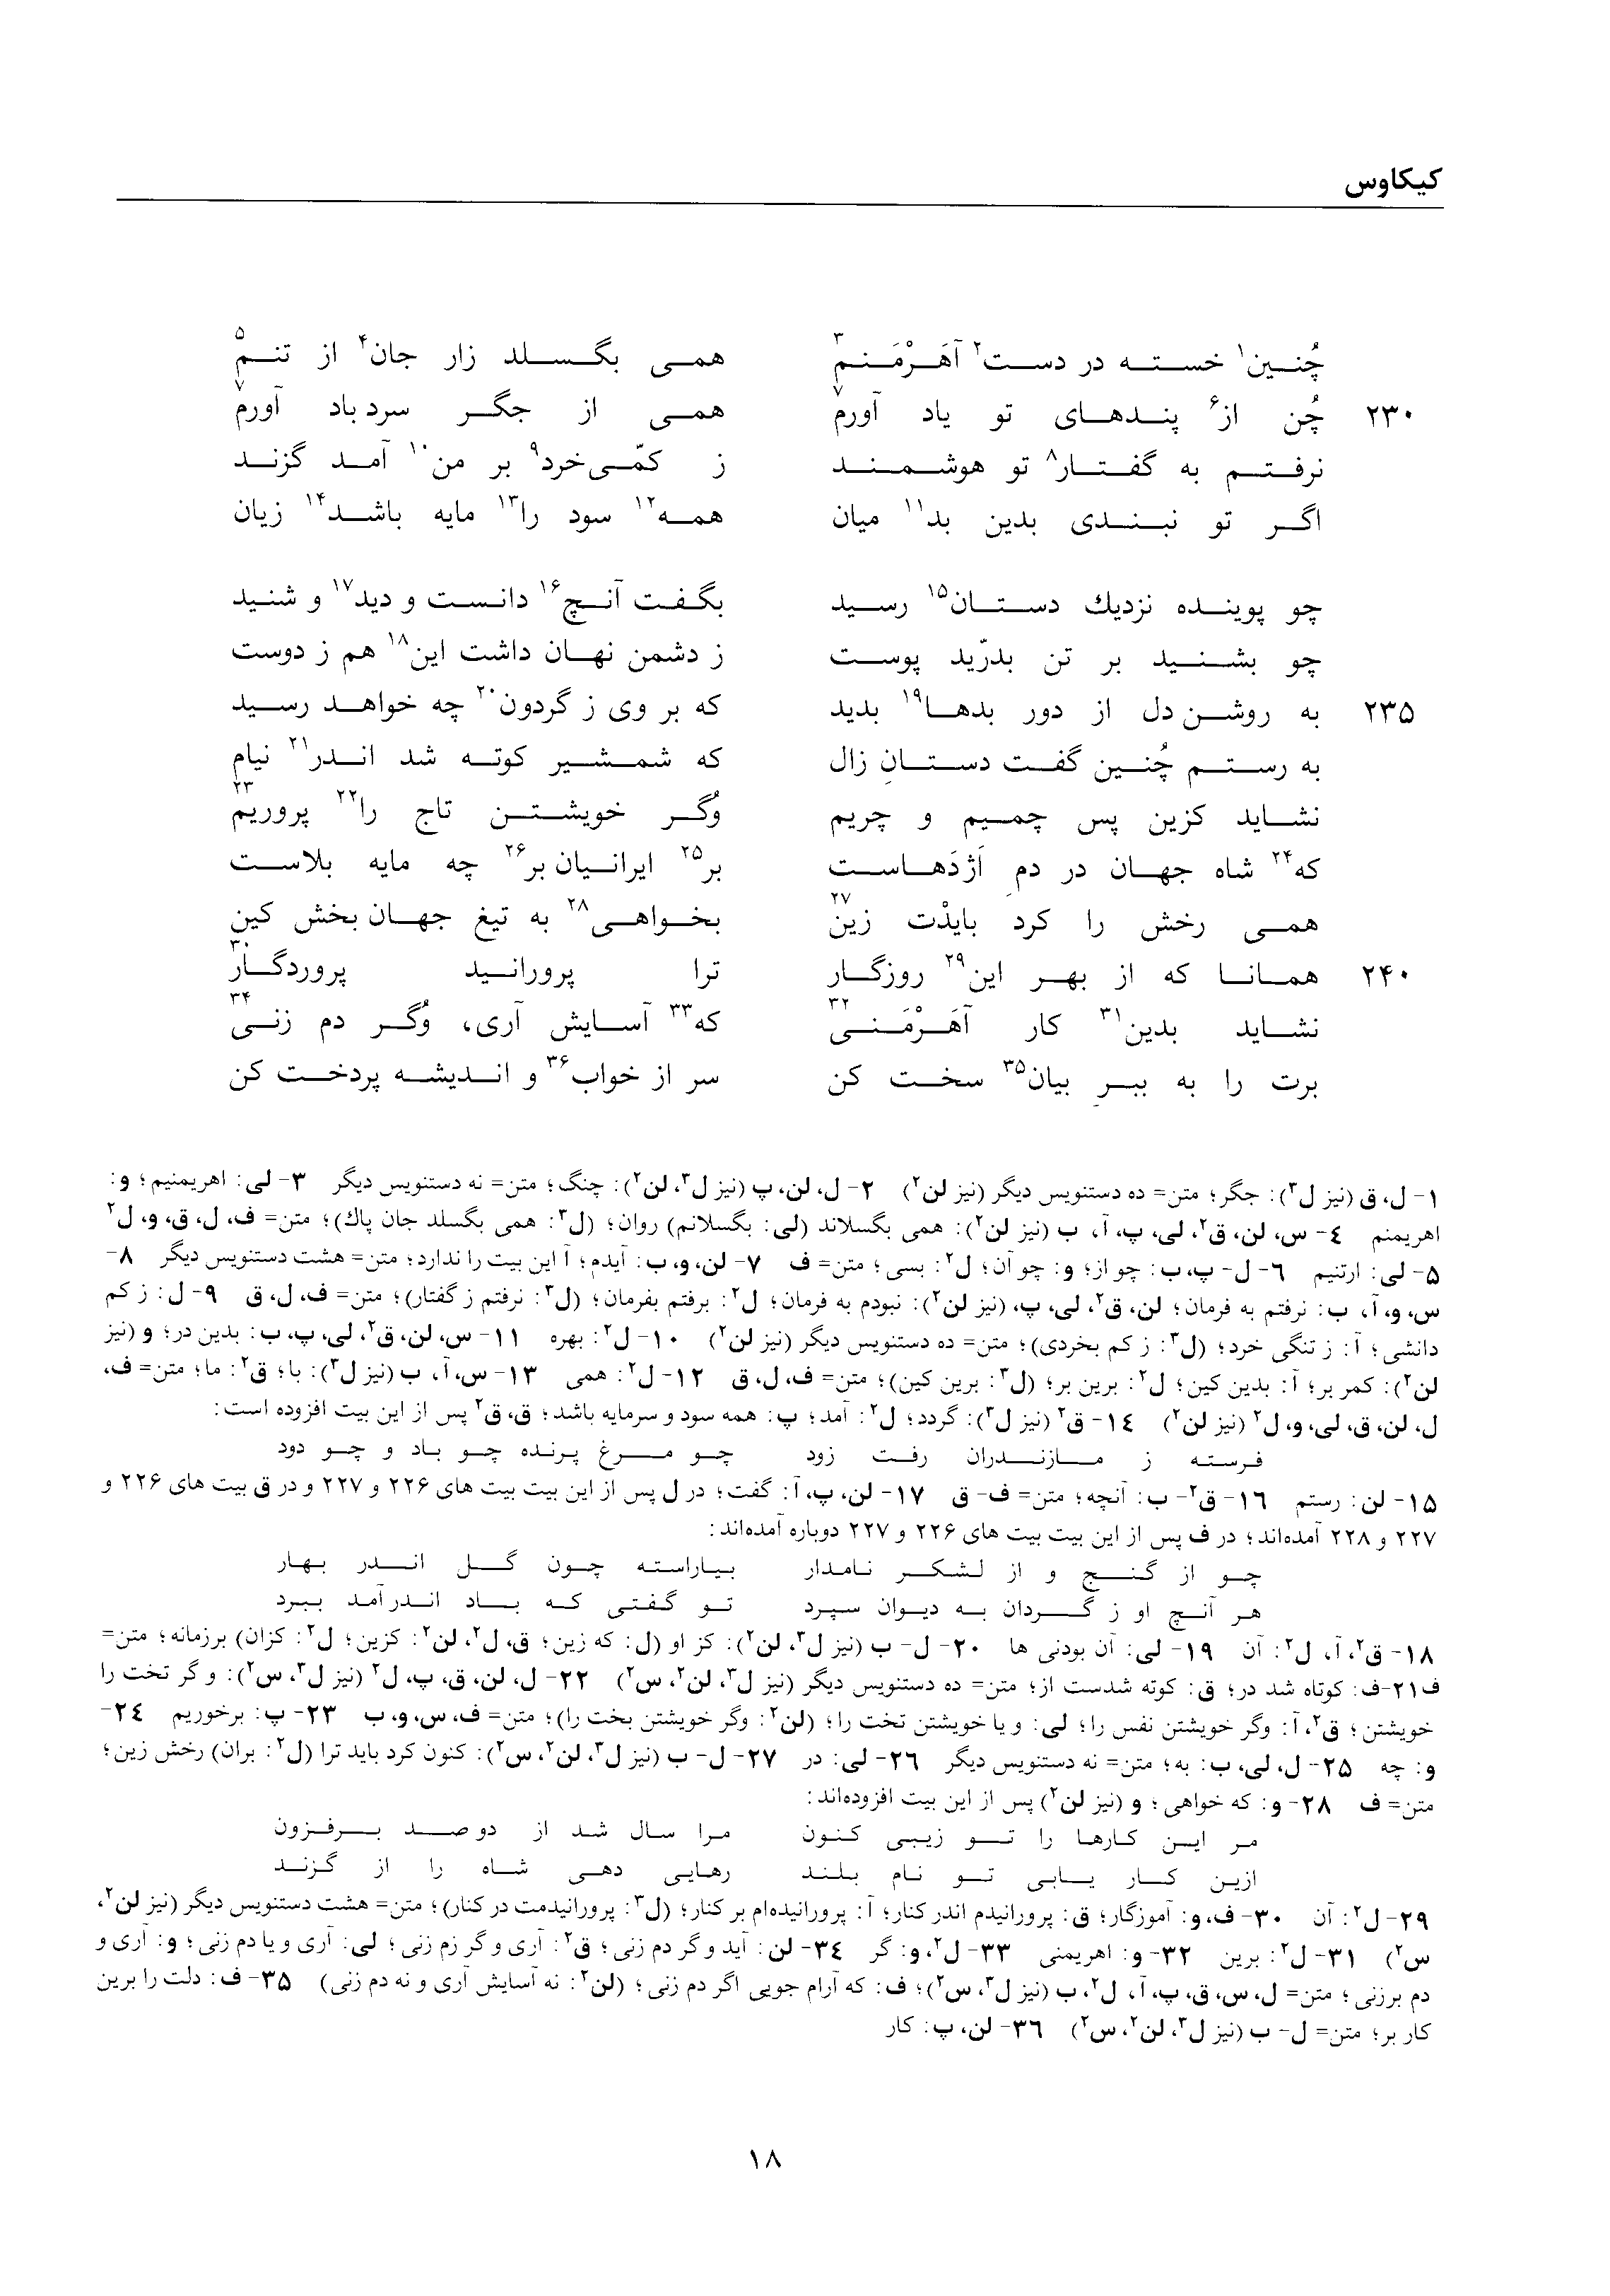 vol. 2, p. 18